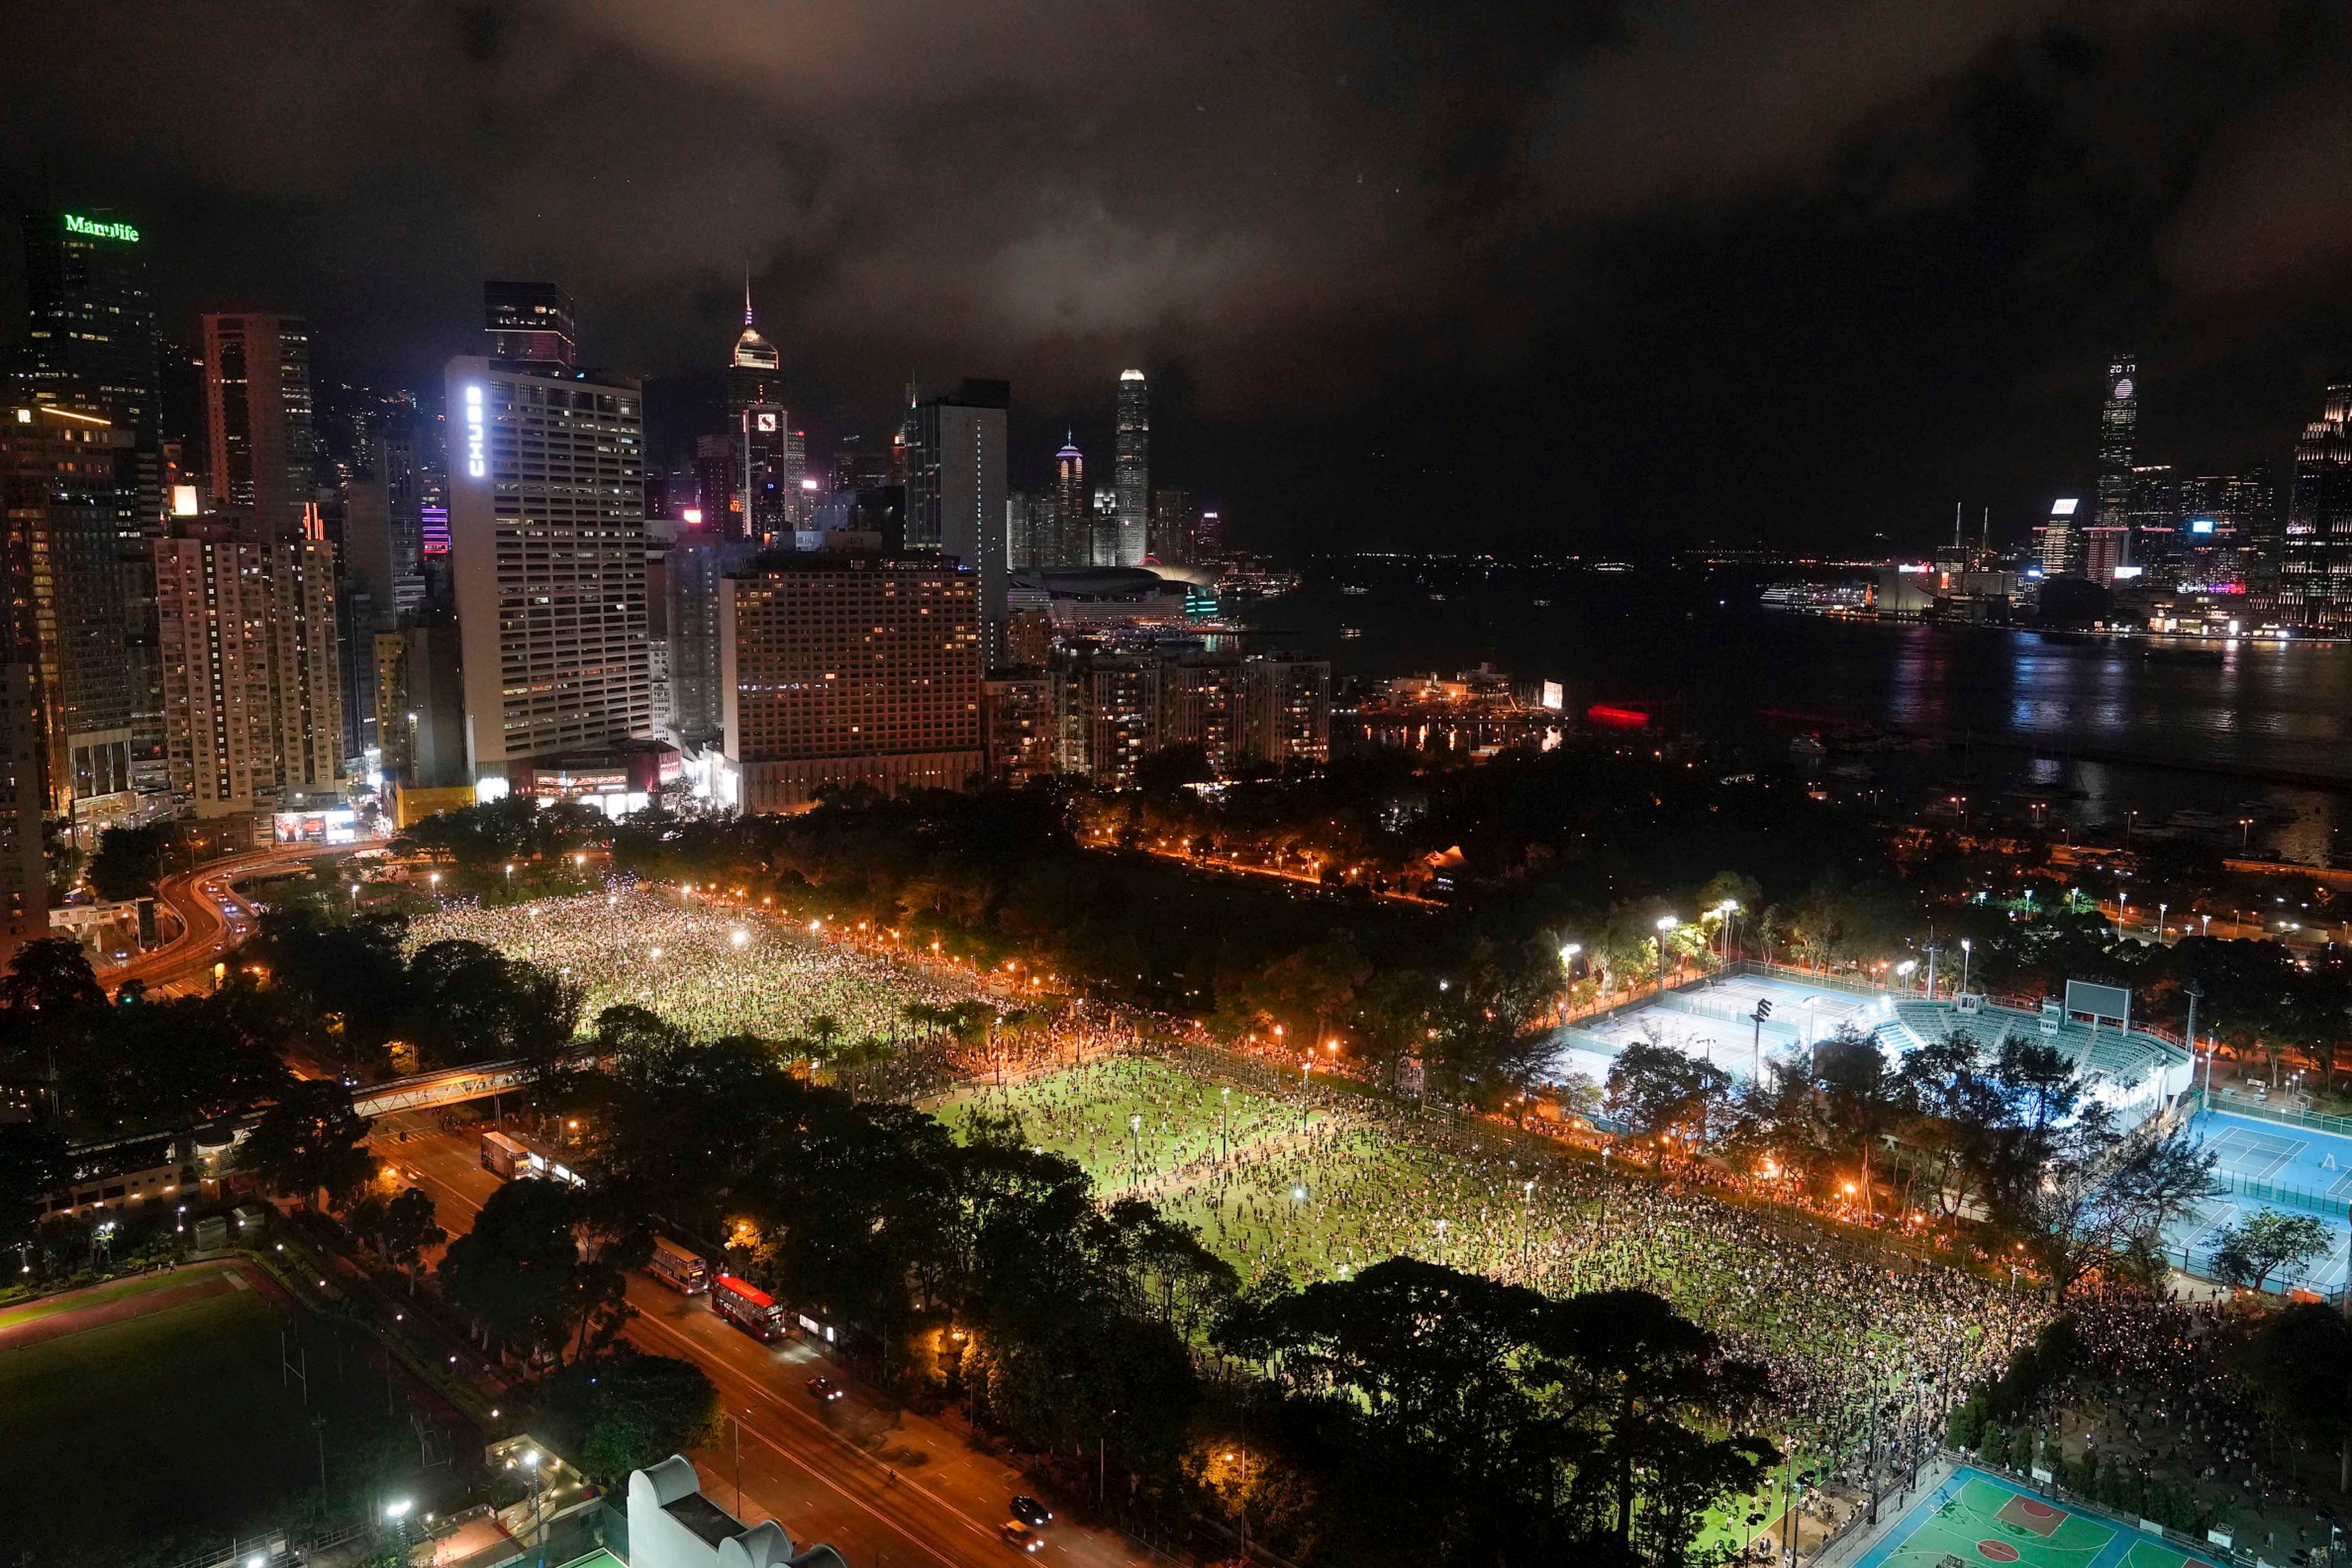 Une veillée en hommage aux victimes du massacre de la place Tiananmen en 1989 était tenue dans la soirée du 4 juin 2020 dans le parc Victoria à Hong Kong. Ces personnes ont voulu marquer le 31ème du massacre, malgré l’impossibilité d’obtenir au préalable l’autorisation officielle pour ce rassemblement.